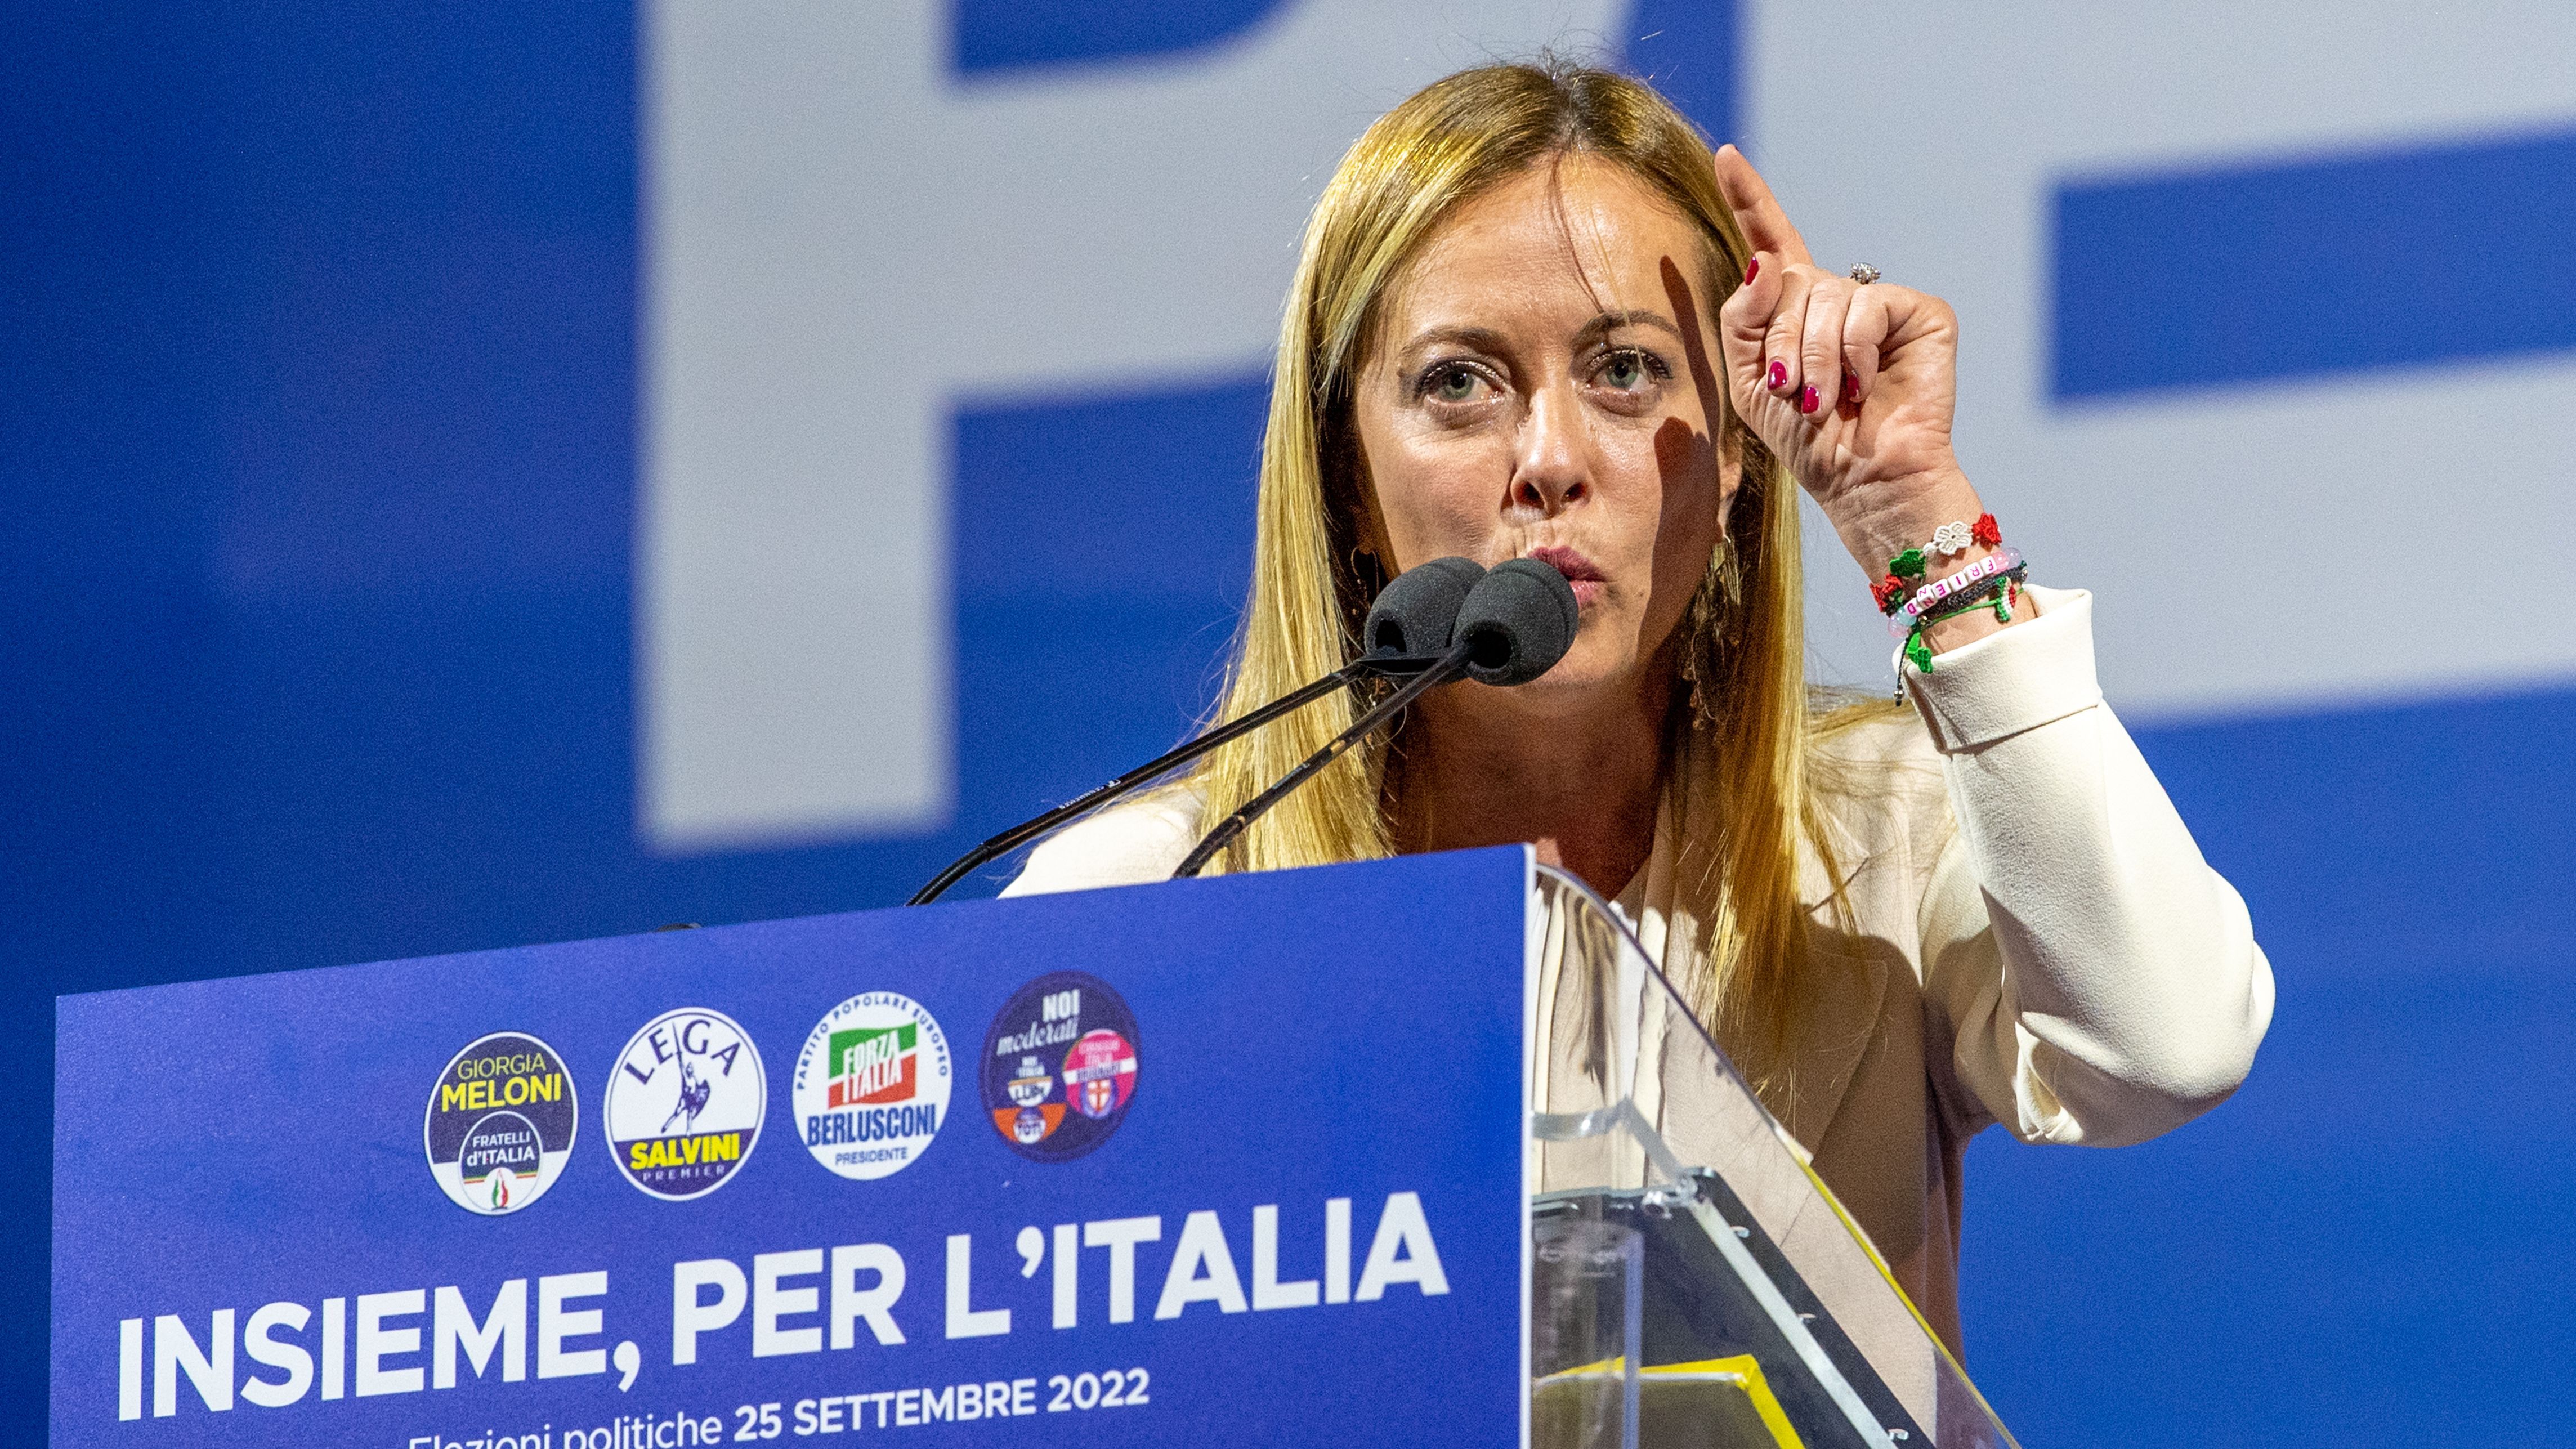 Giorgia Meloni, la ultraderechista favorita para gobernar Italia que quiere el triunfo de Vox en España